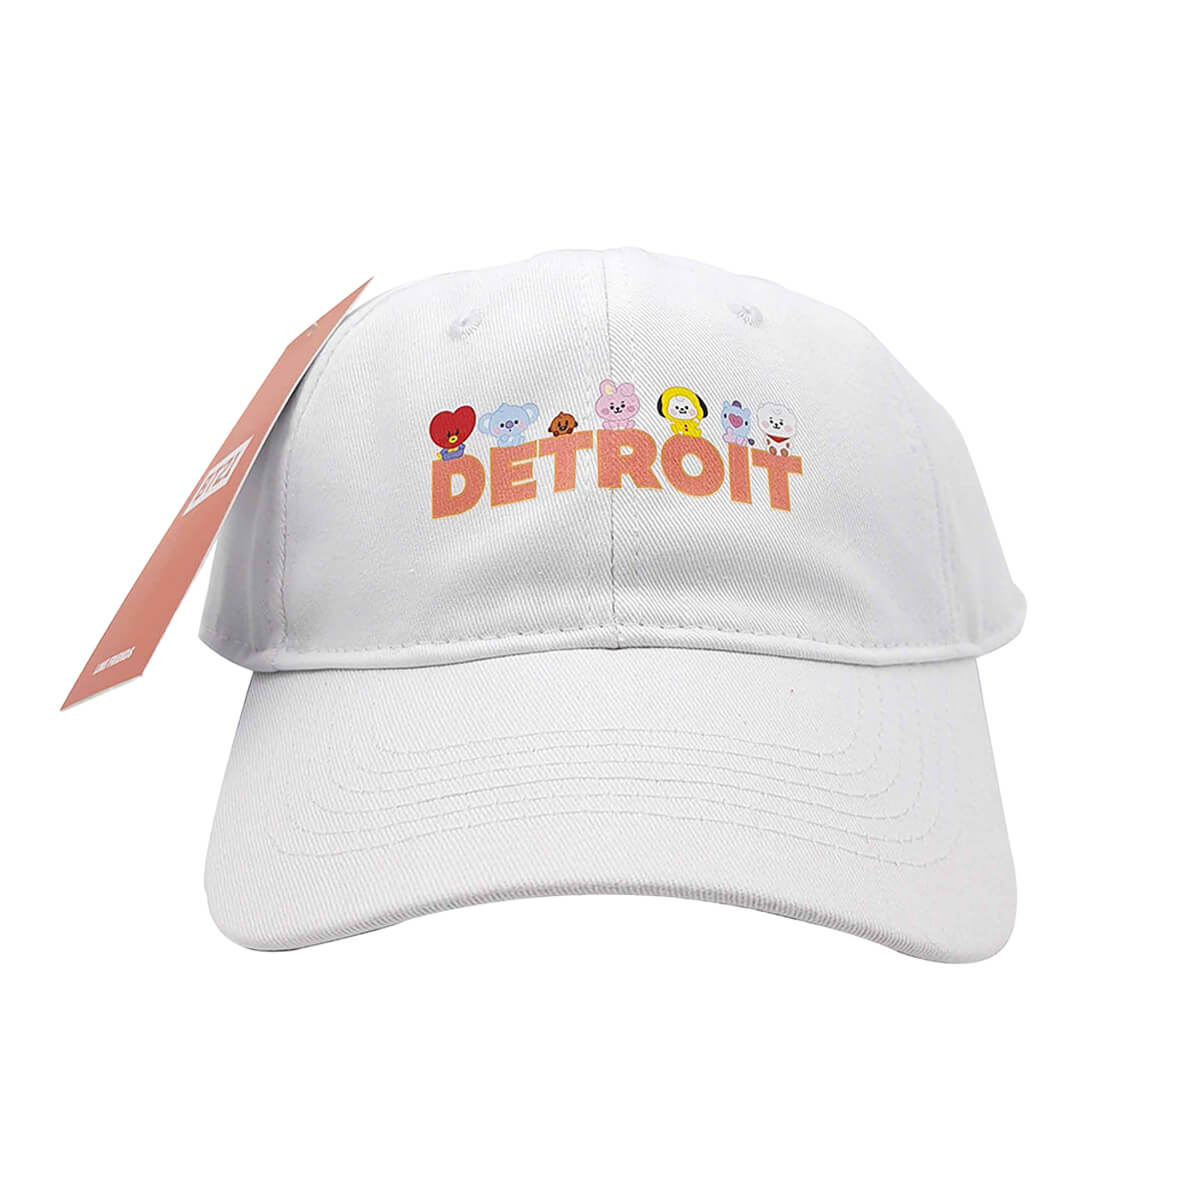 BT21 Detroit City Pop-up Cap